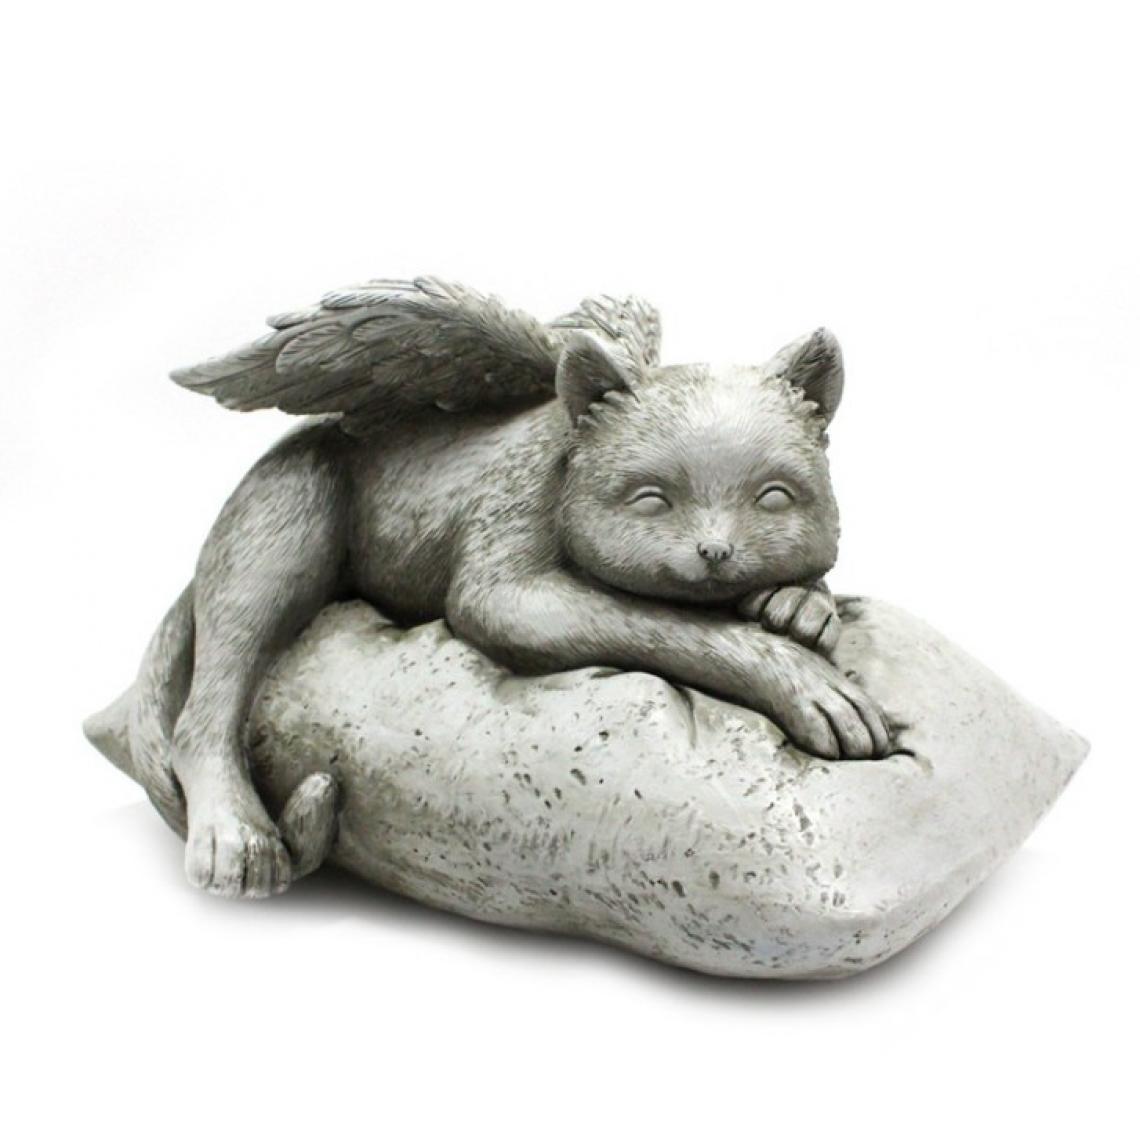 Vicabo - Statue de chat - Petite déco d'exterieur